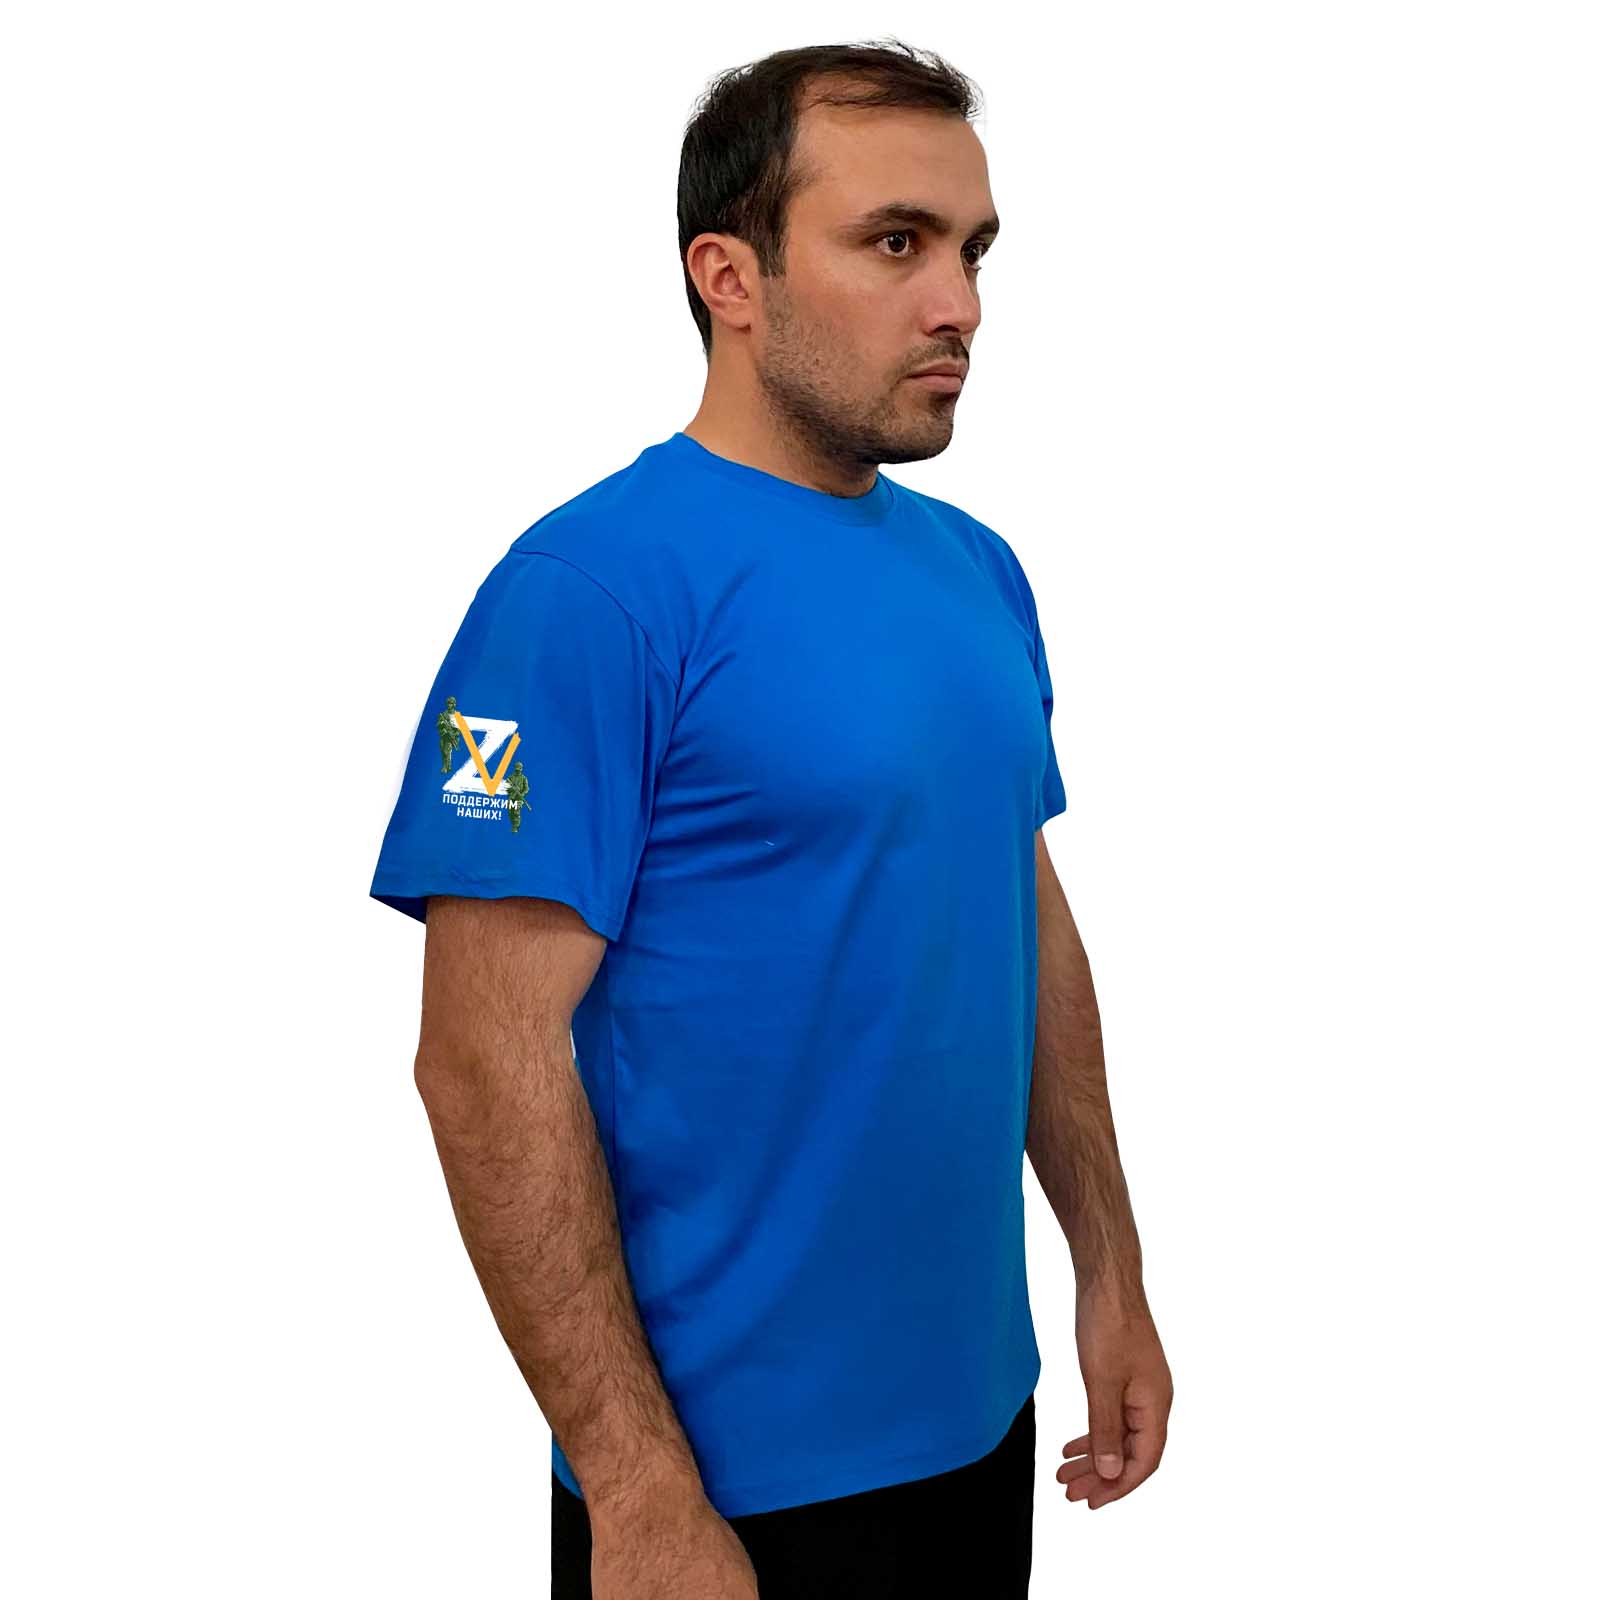 Купить строгую голубую футболку Z V онлайн выгодно